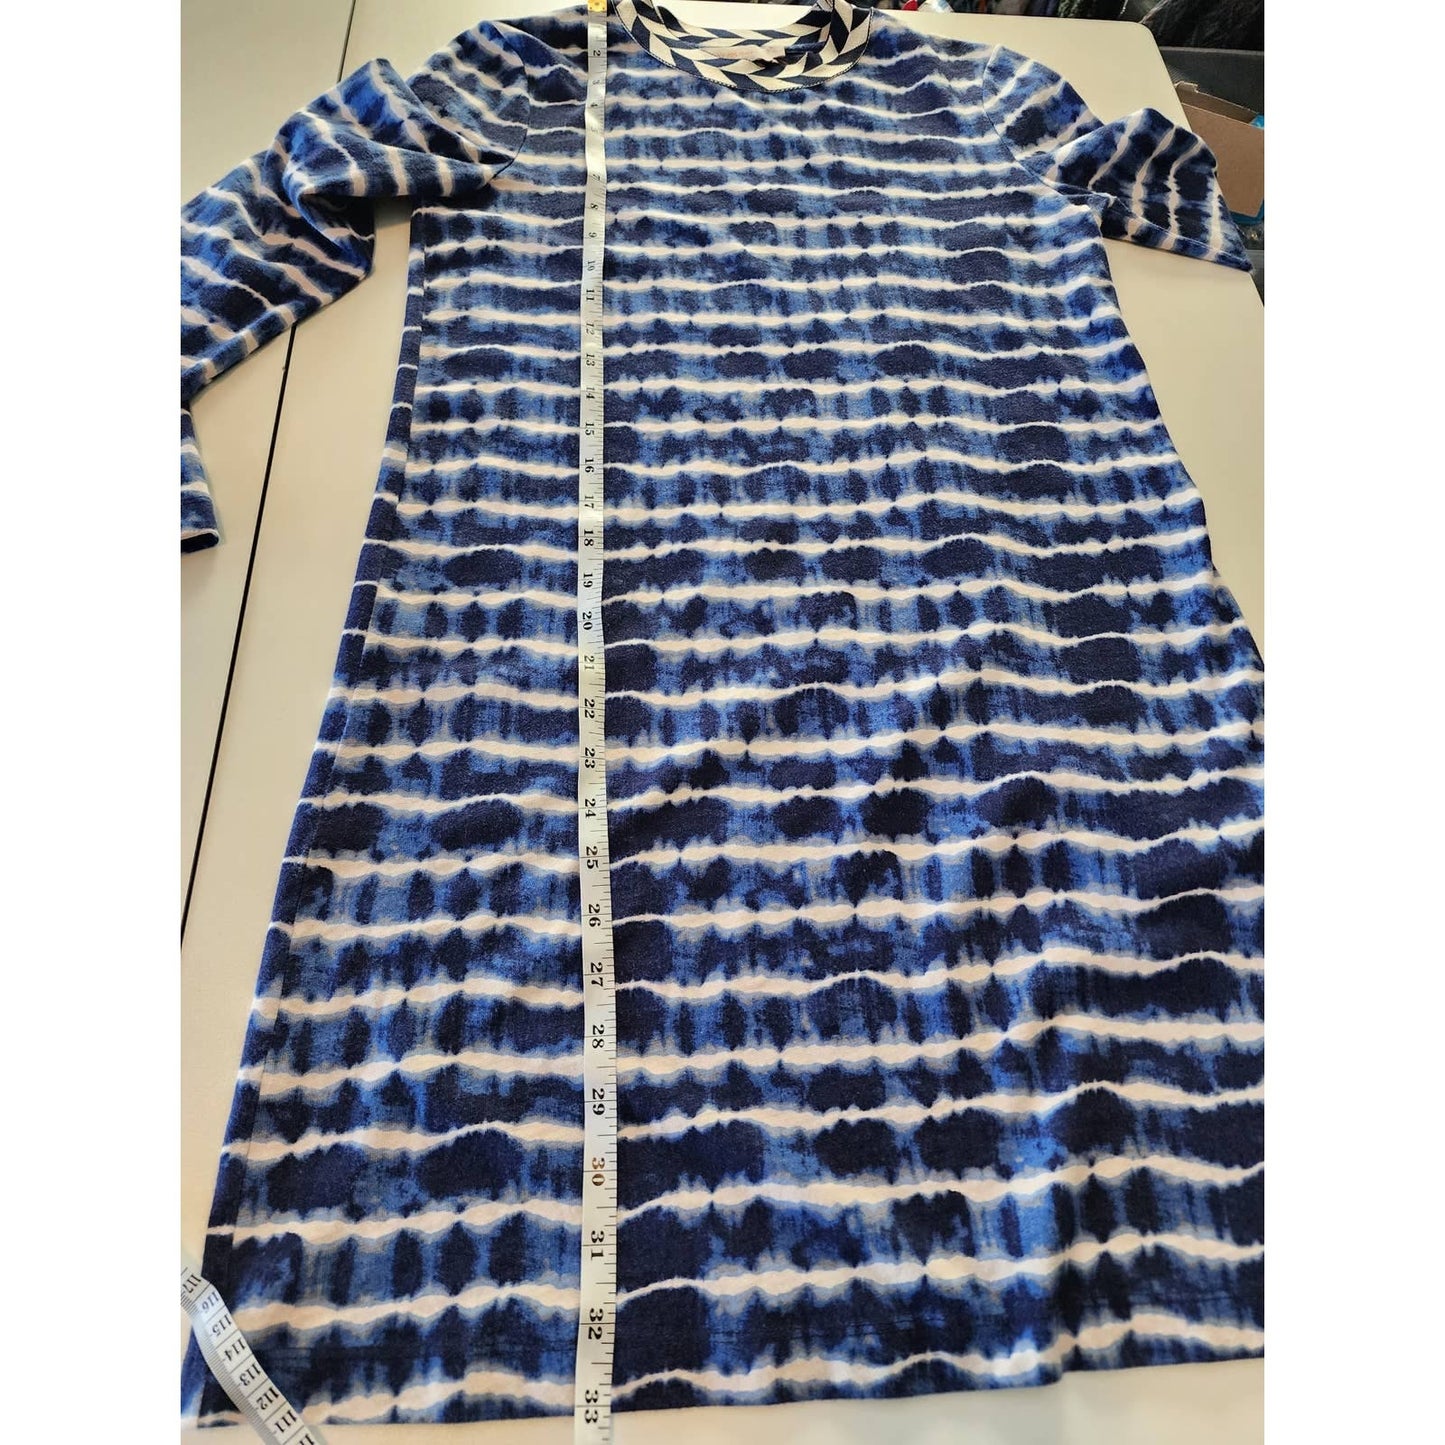 Tory Burch Tie-Dye Striped Blue & White Mini Dress 100% Cotton